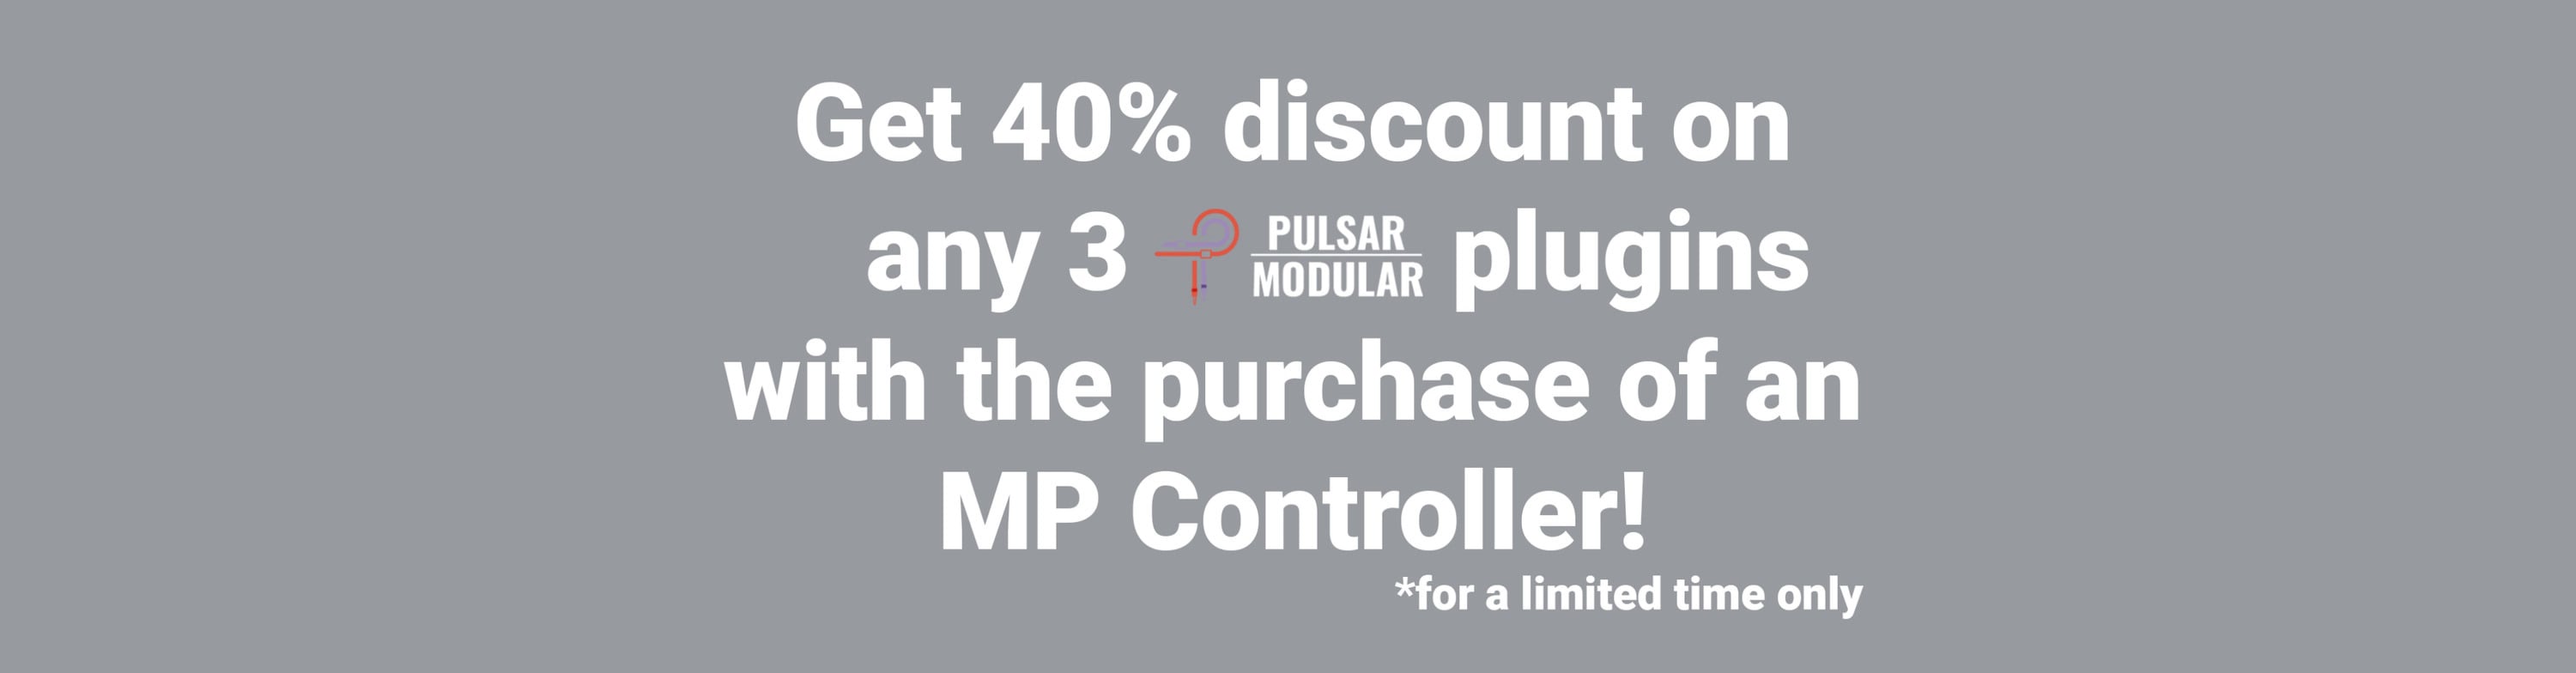 MP Controller Discount for Pulsar Modular Plugins